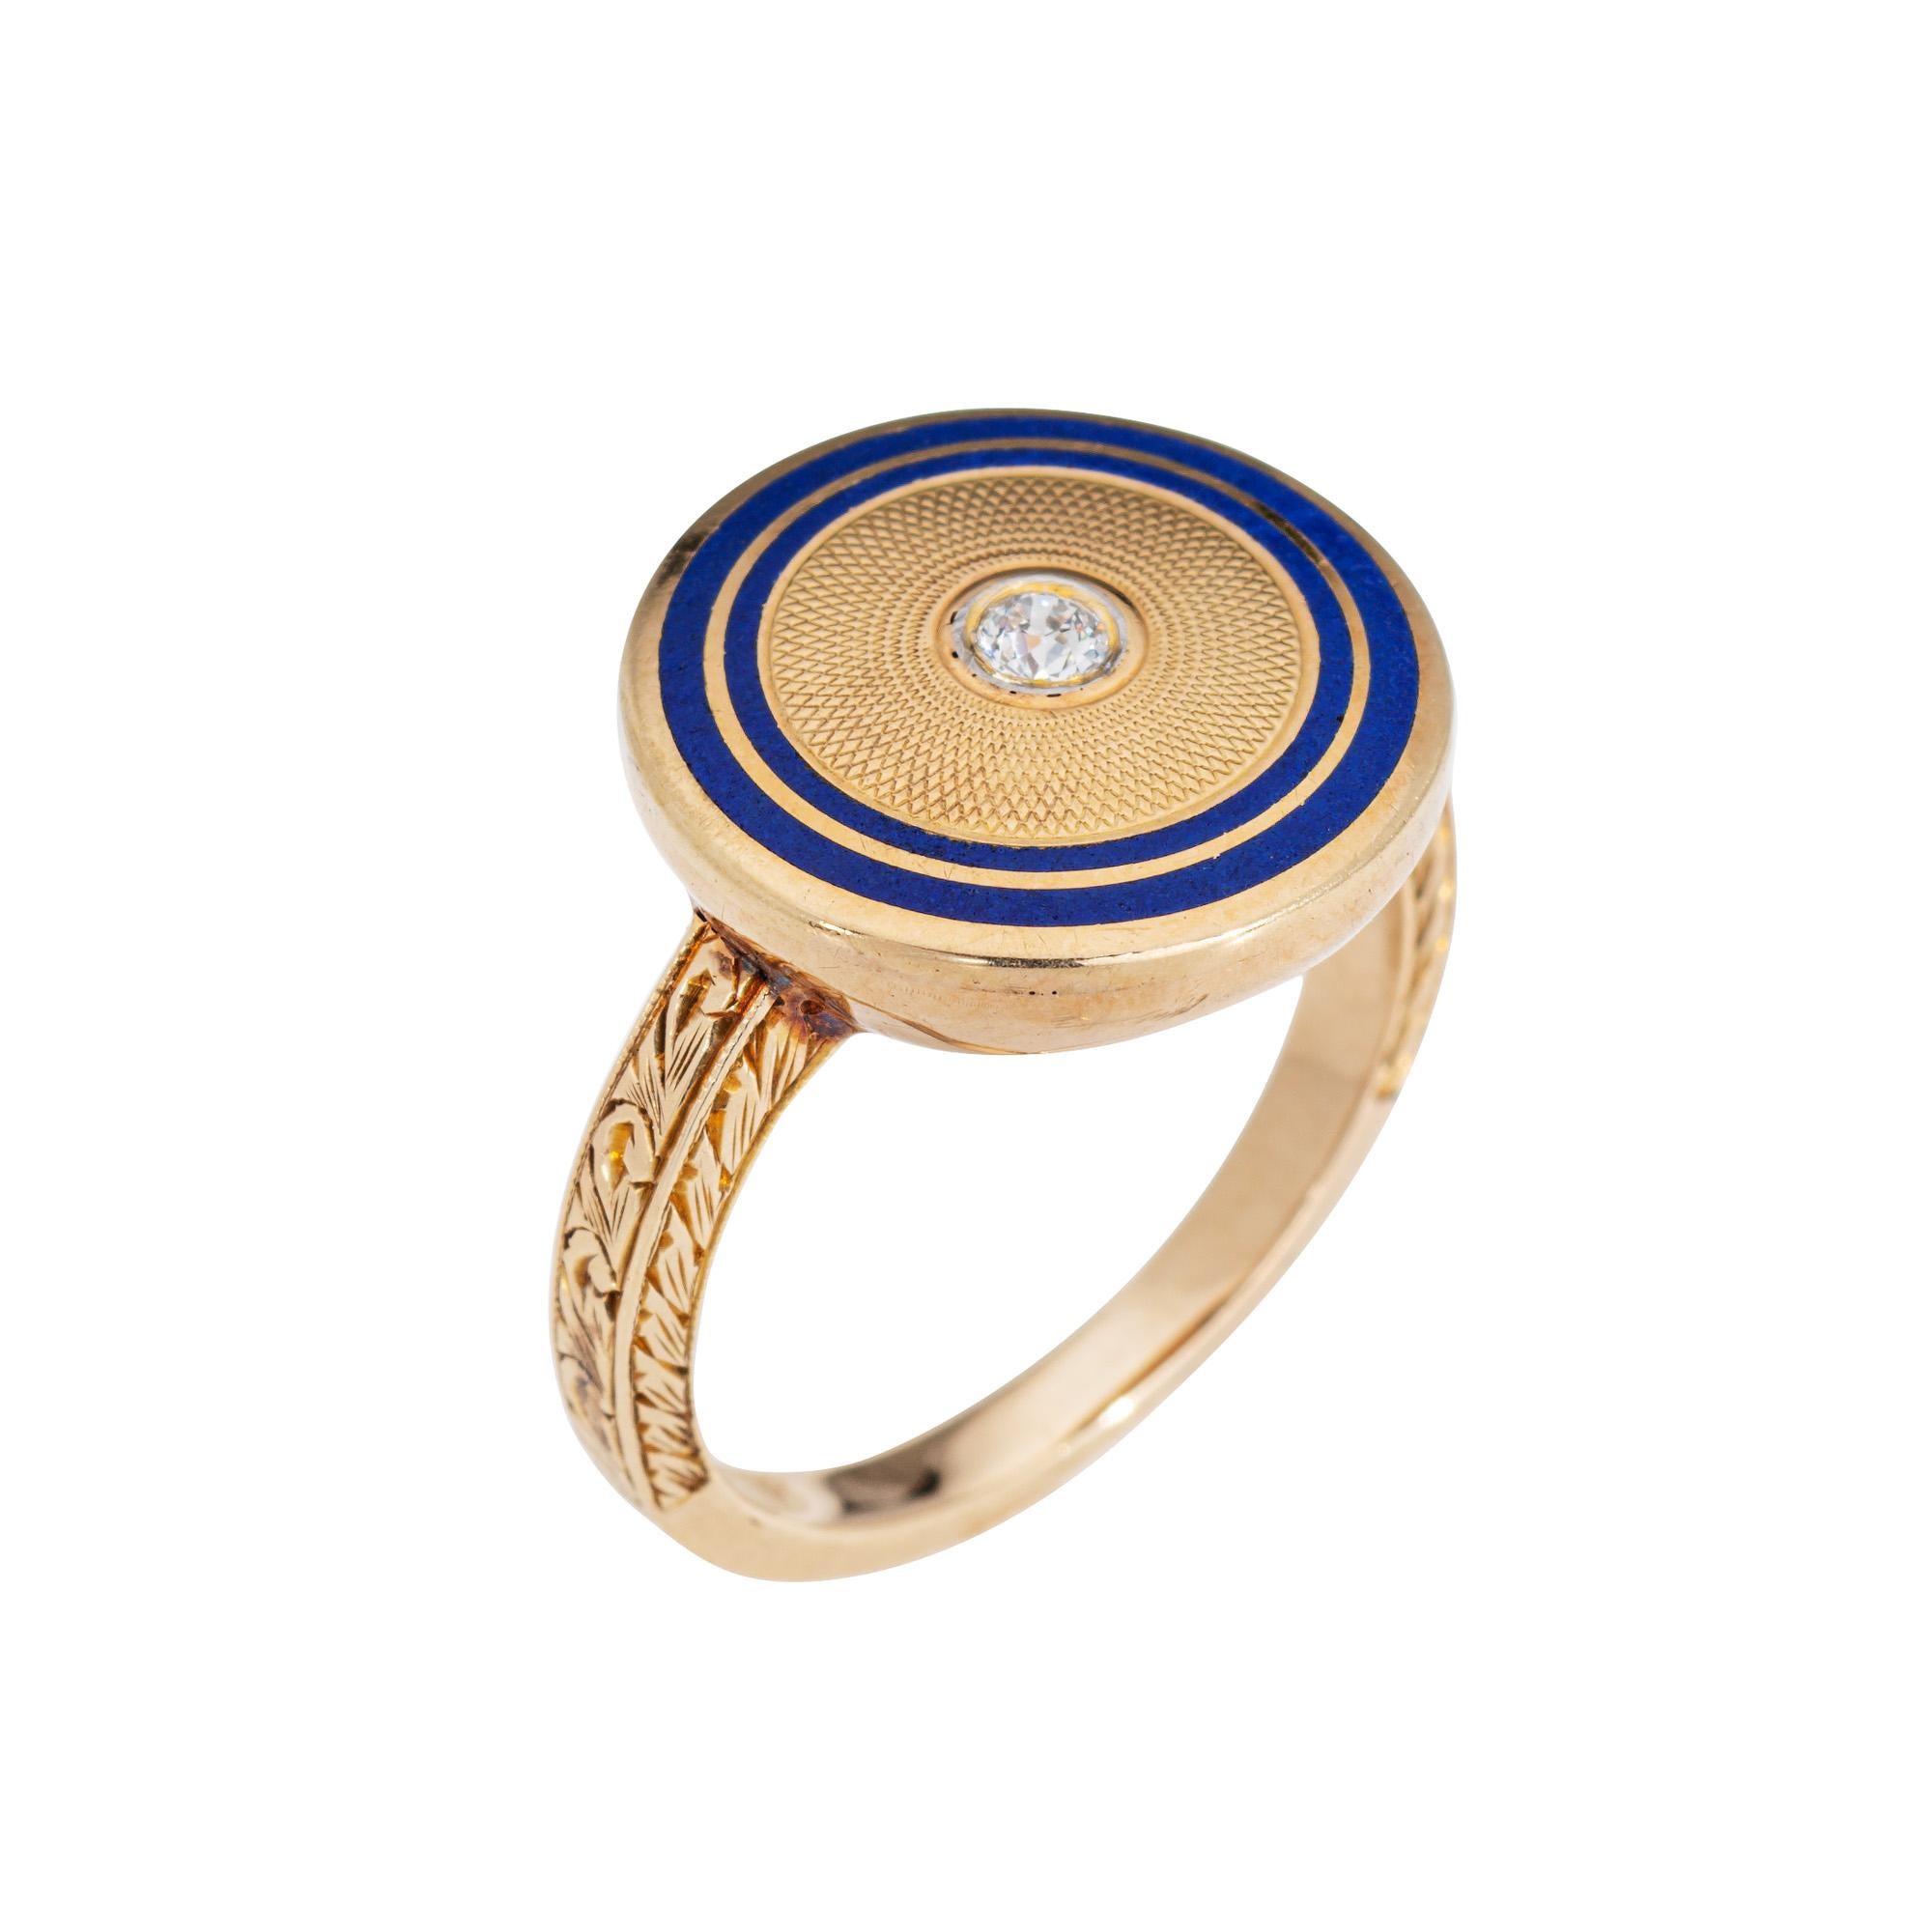 Stilvoller Diamant- und Emaille-Ring aus 14-karätigem Gelbgold aus der Art-Déco-Ära (ca. 1920er bis 1930er Jahre). 

Der Diamant im alten europäischen Schliff wird auf 0,05 Karat geschätzt (geschätzte Farbe H-I und Reinheit VS2-SI1). 

Ein